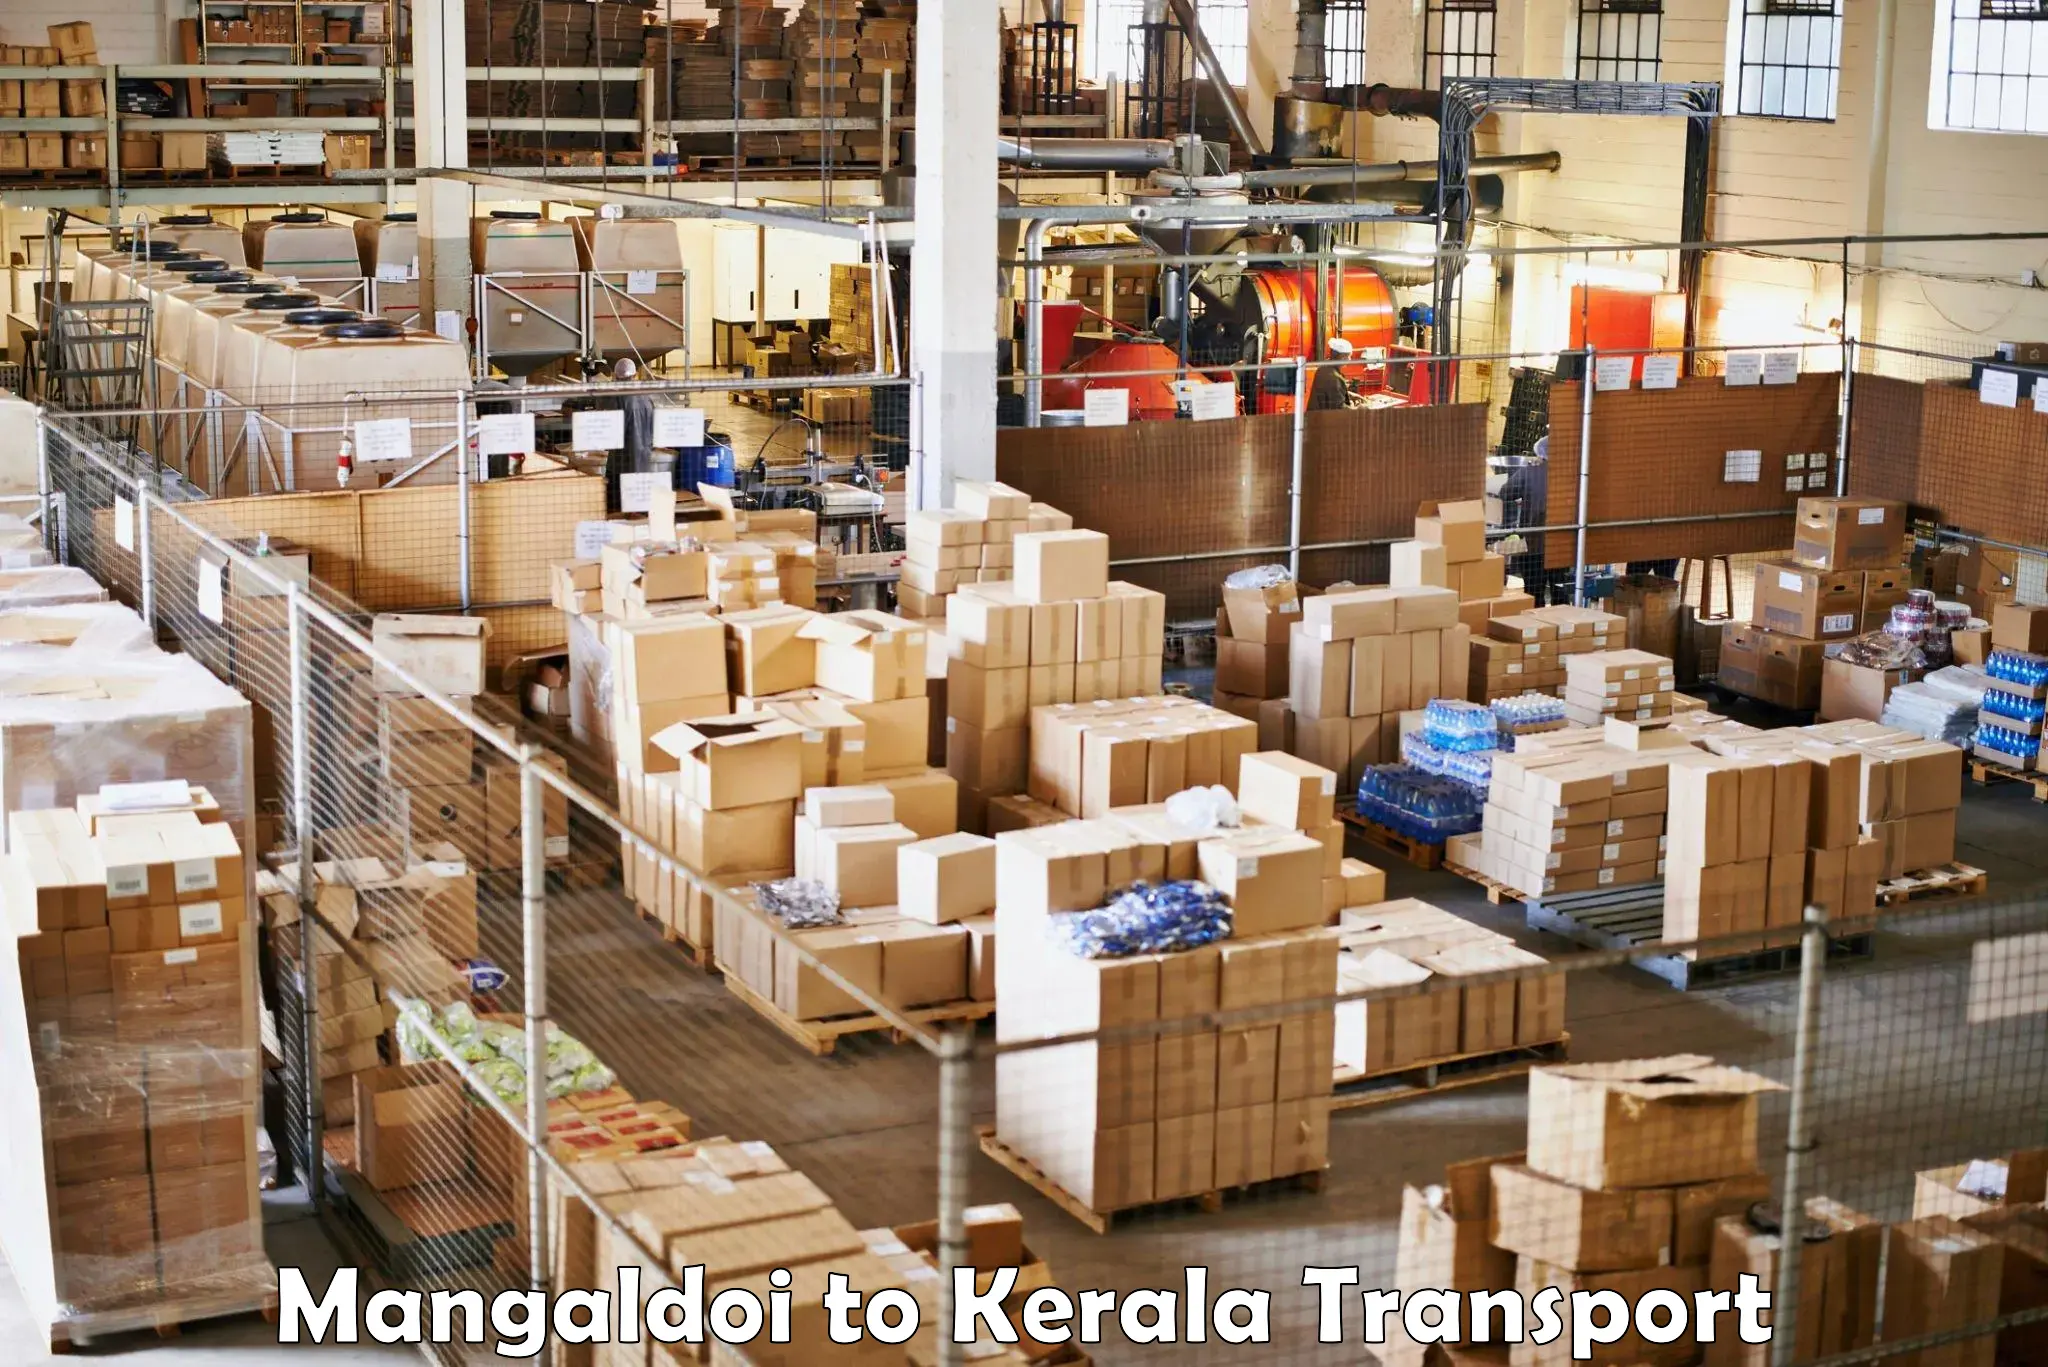 Truck transport companies in India Mangaldoi to Peravoor